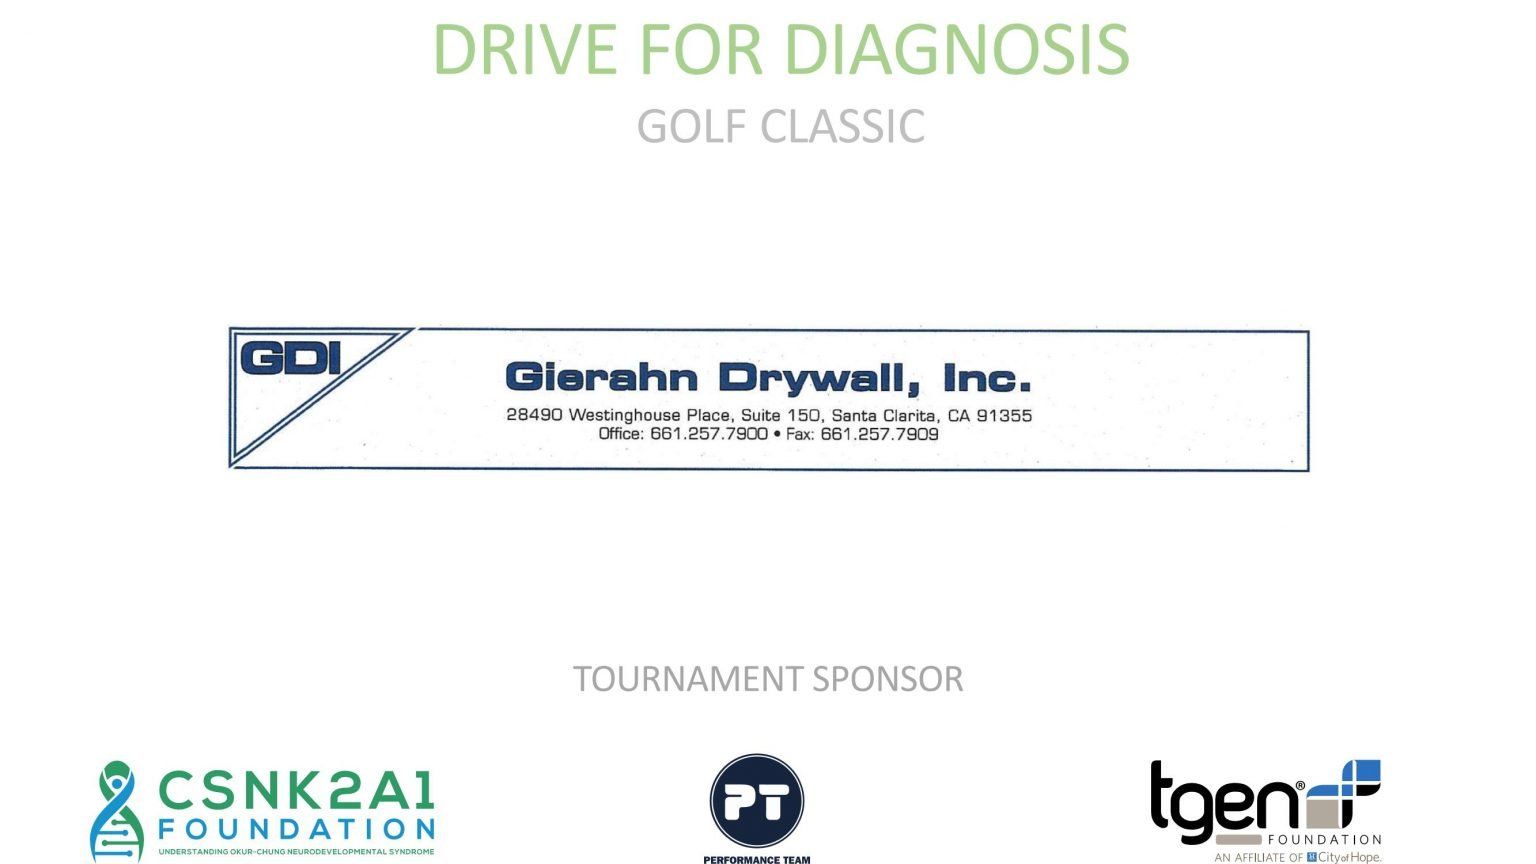 Tournament Sponsor - Gierahn Drywall, Inc.